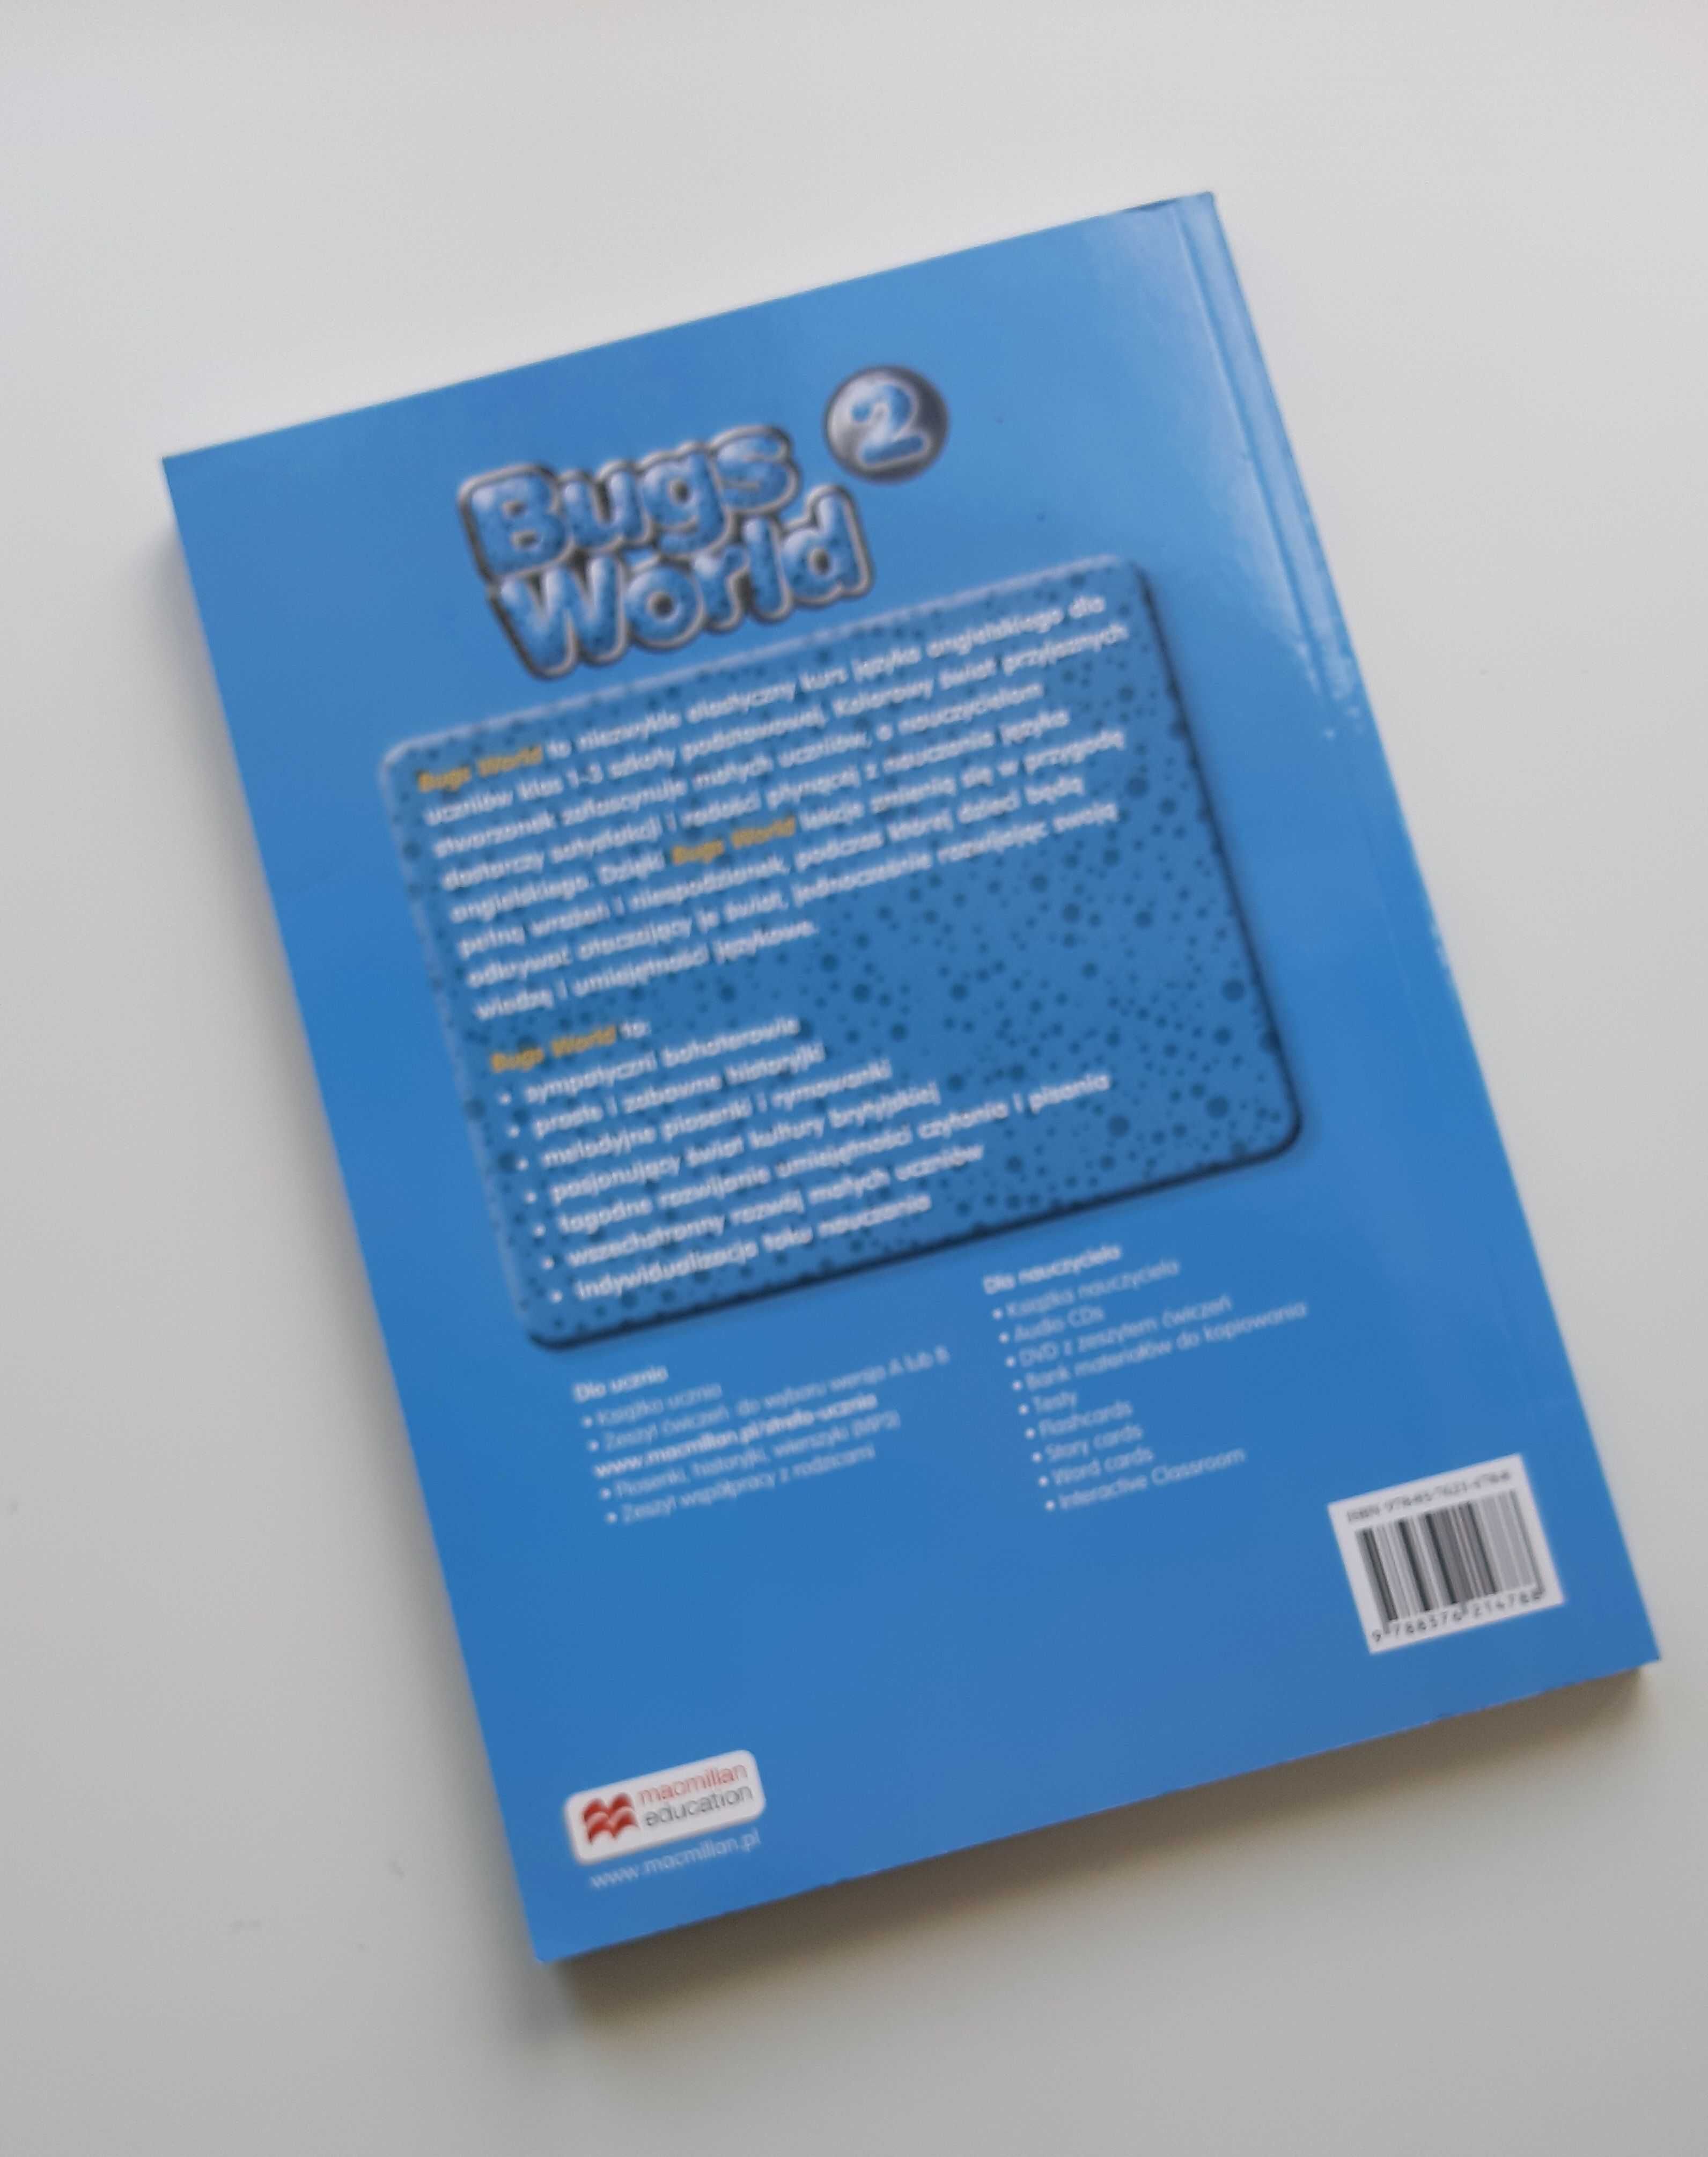 Bugs world 2 - książka nauczyciela do podręcznika wieloletniego